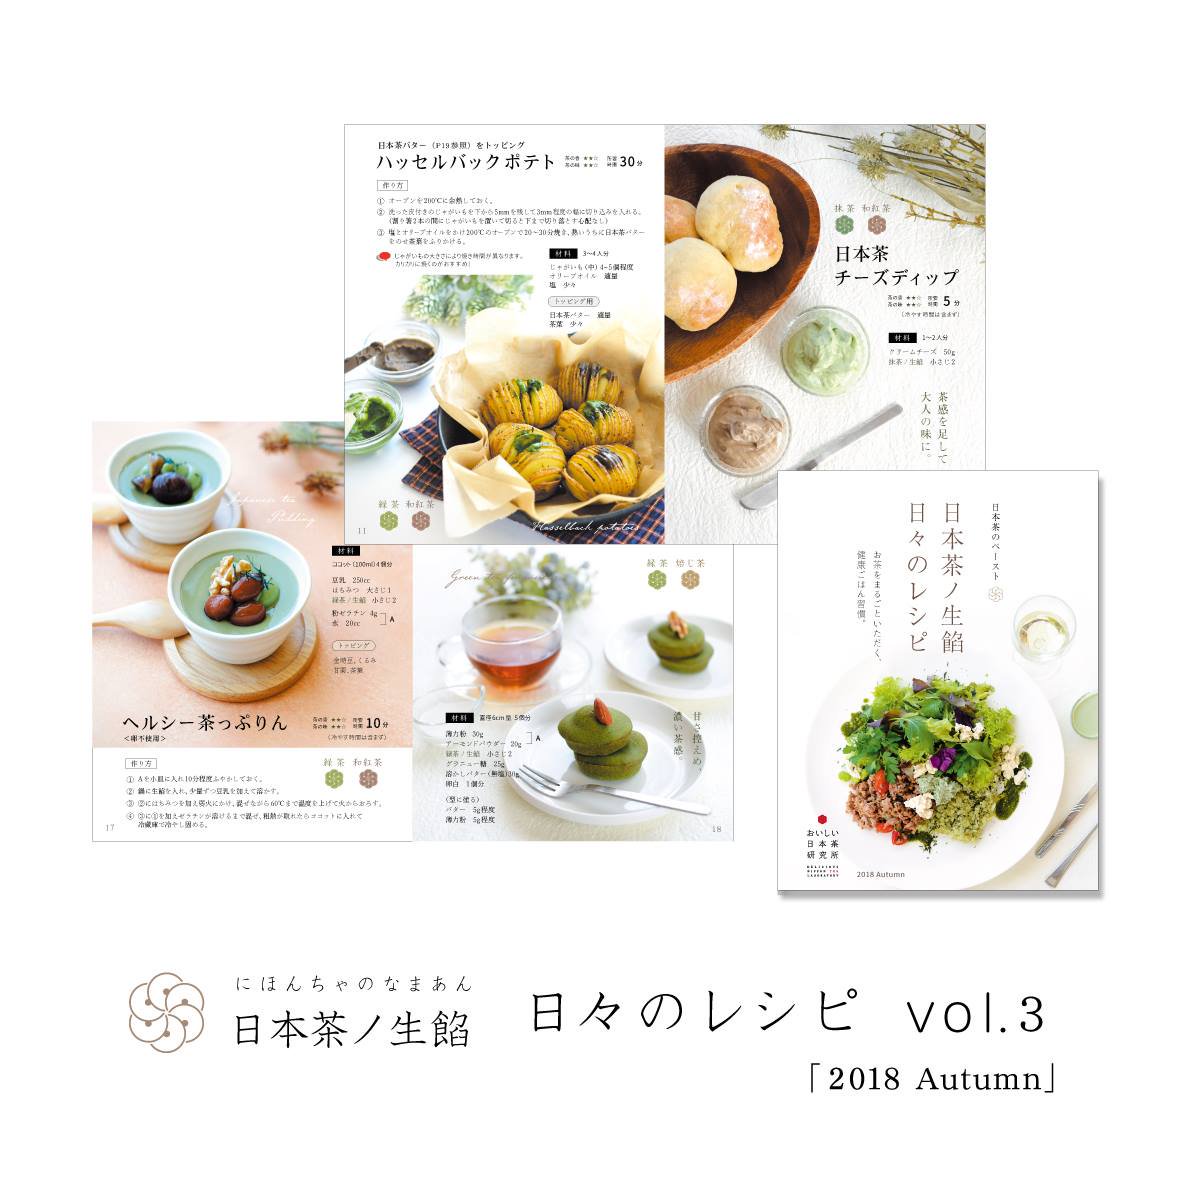 日本茶ノ生餡、日本茶のペーストを使った日々のレシピ「秋」vol.3。おいしい日本茶研究所。